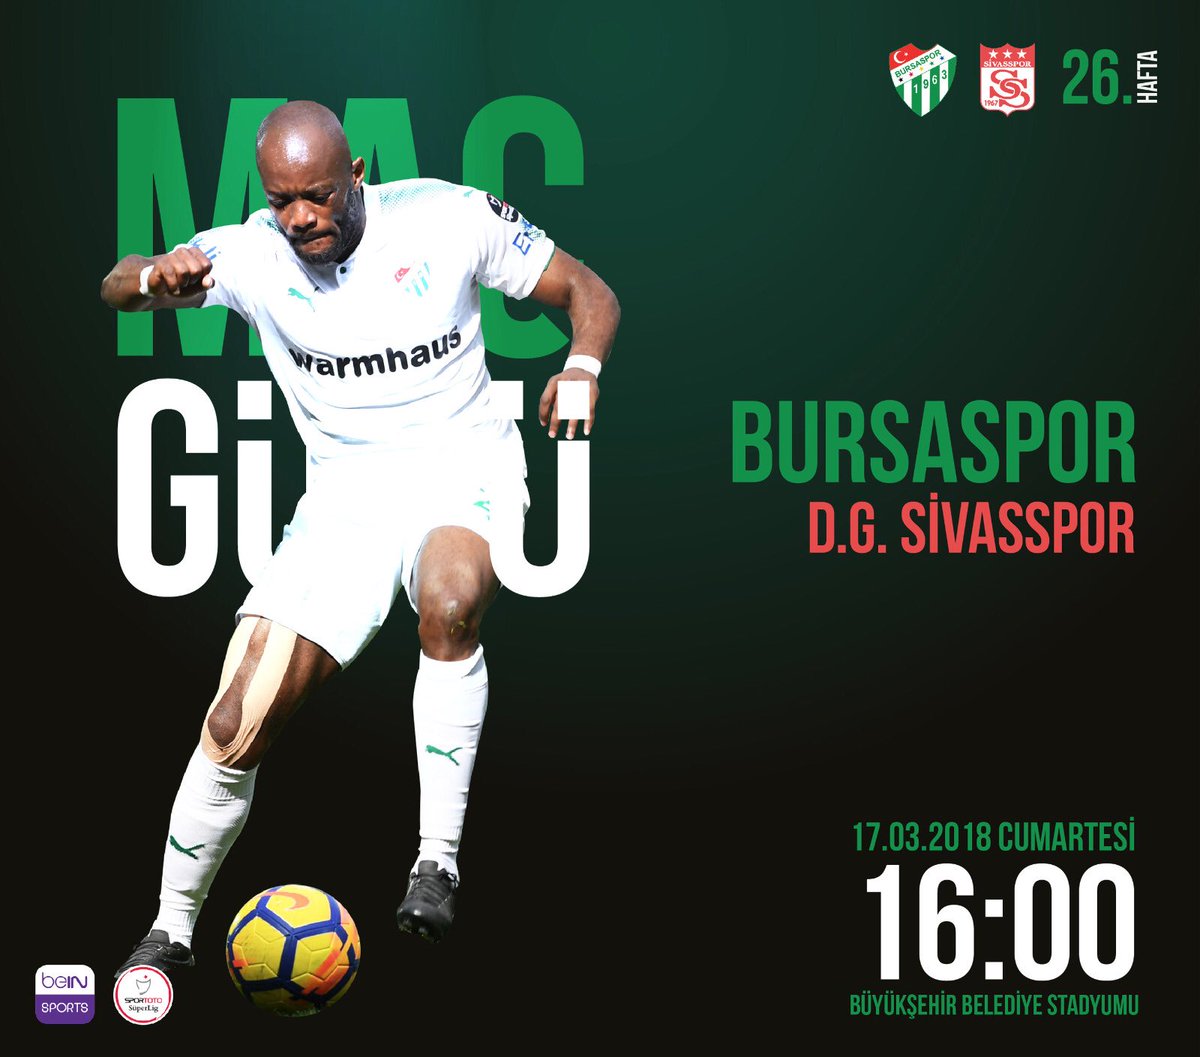 🚨 MAÇ GÜNÜ ⚽️ Bursaspor - D.G. Sivasspor ⌚️ 16:00 🏟 Büyükşehir Belediye 📢 Hüseyin Göçek 🌤 22° 📺 beIN Sports 2 📲 #Bursaspor